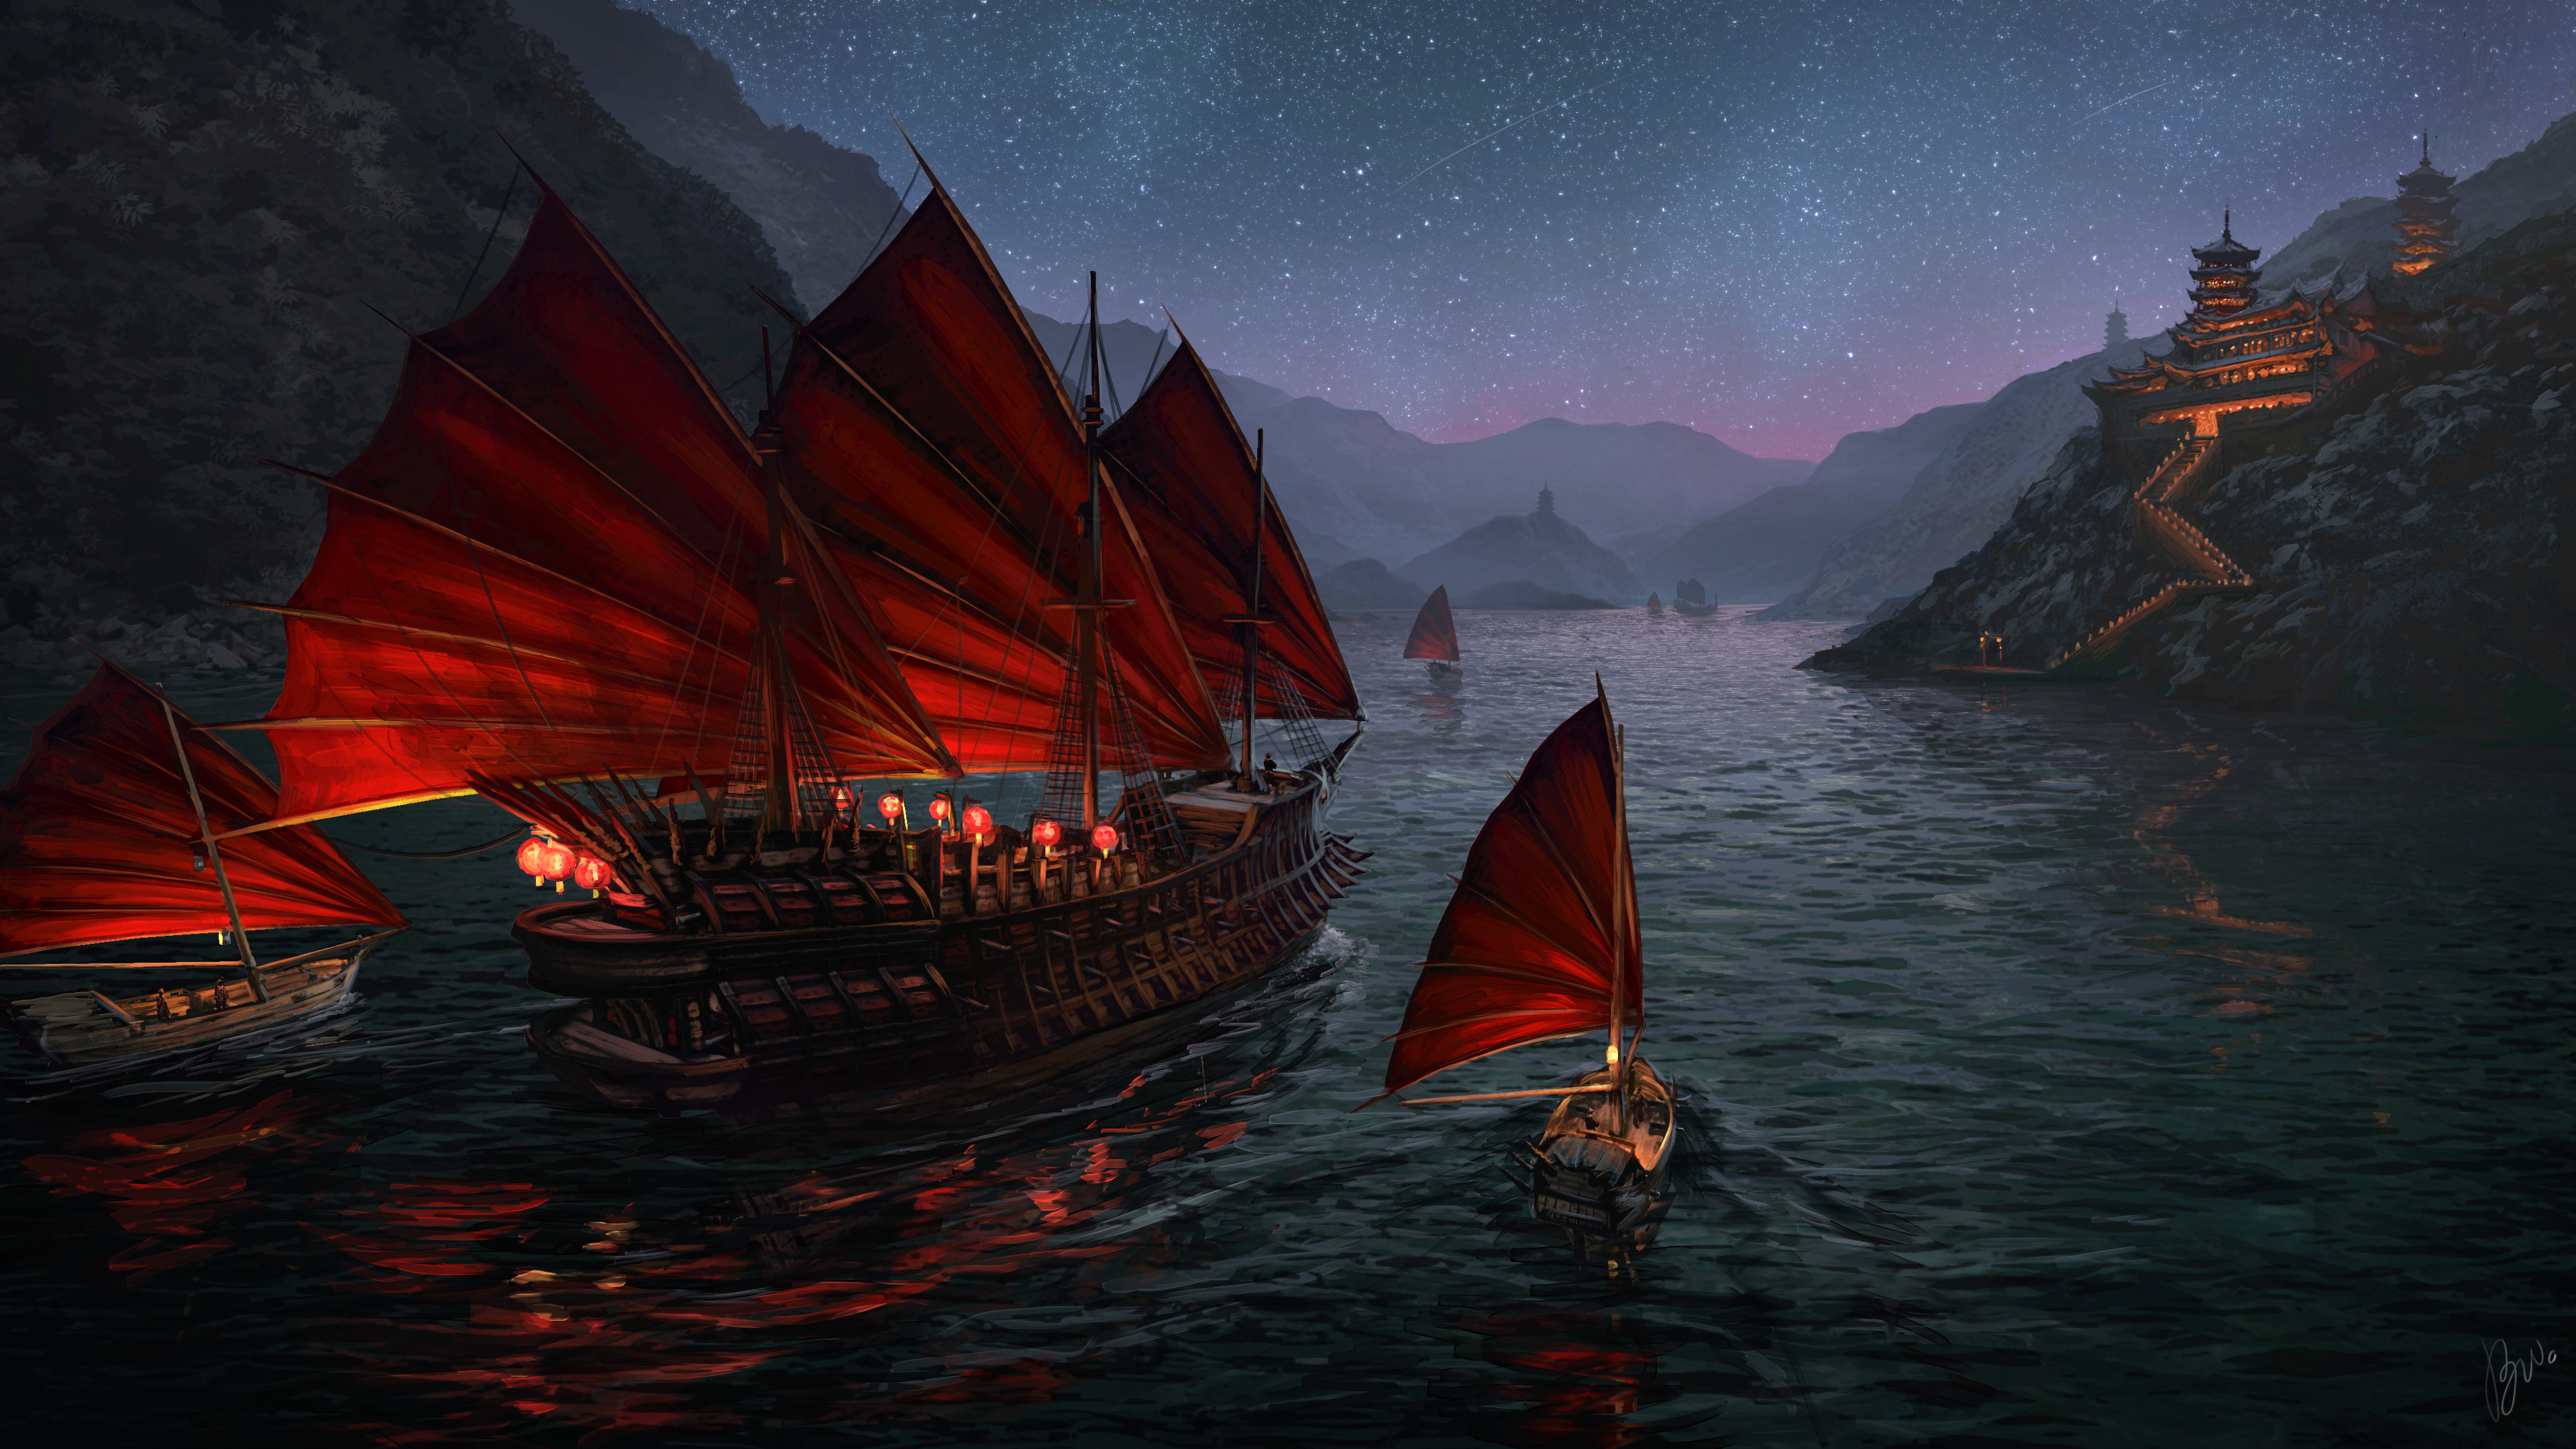  Zhèng Shì and her fleet of junks travelling through the night